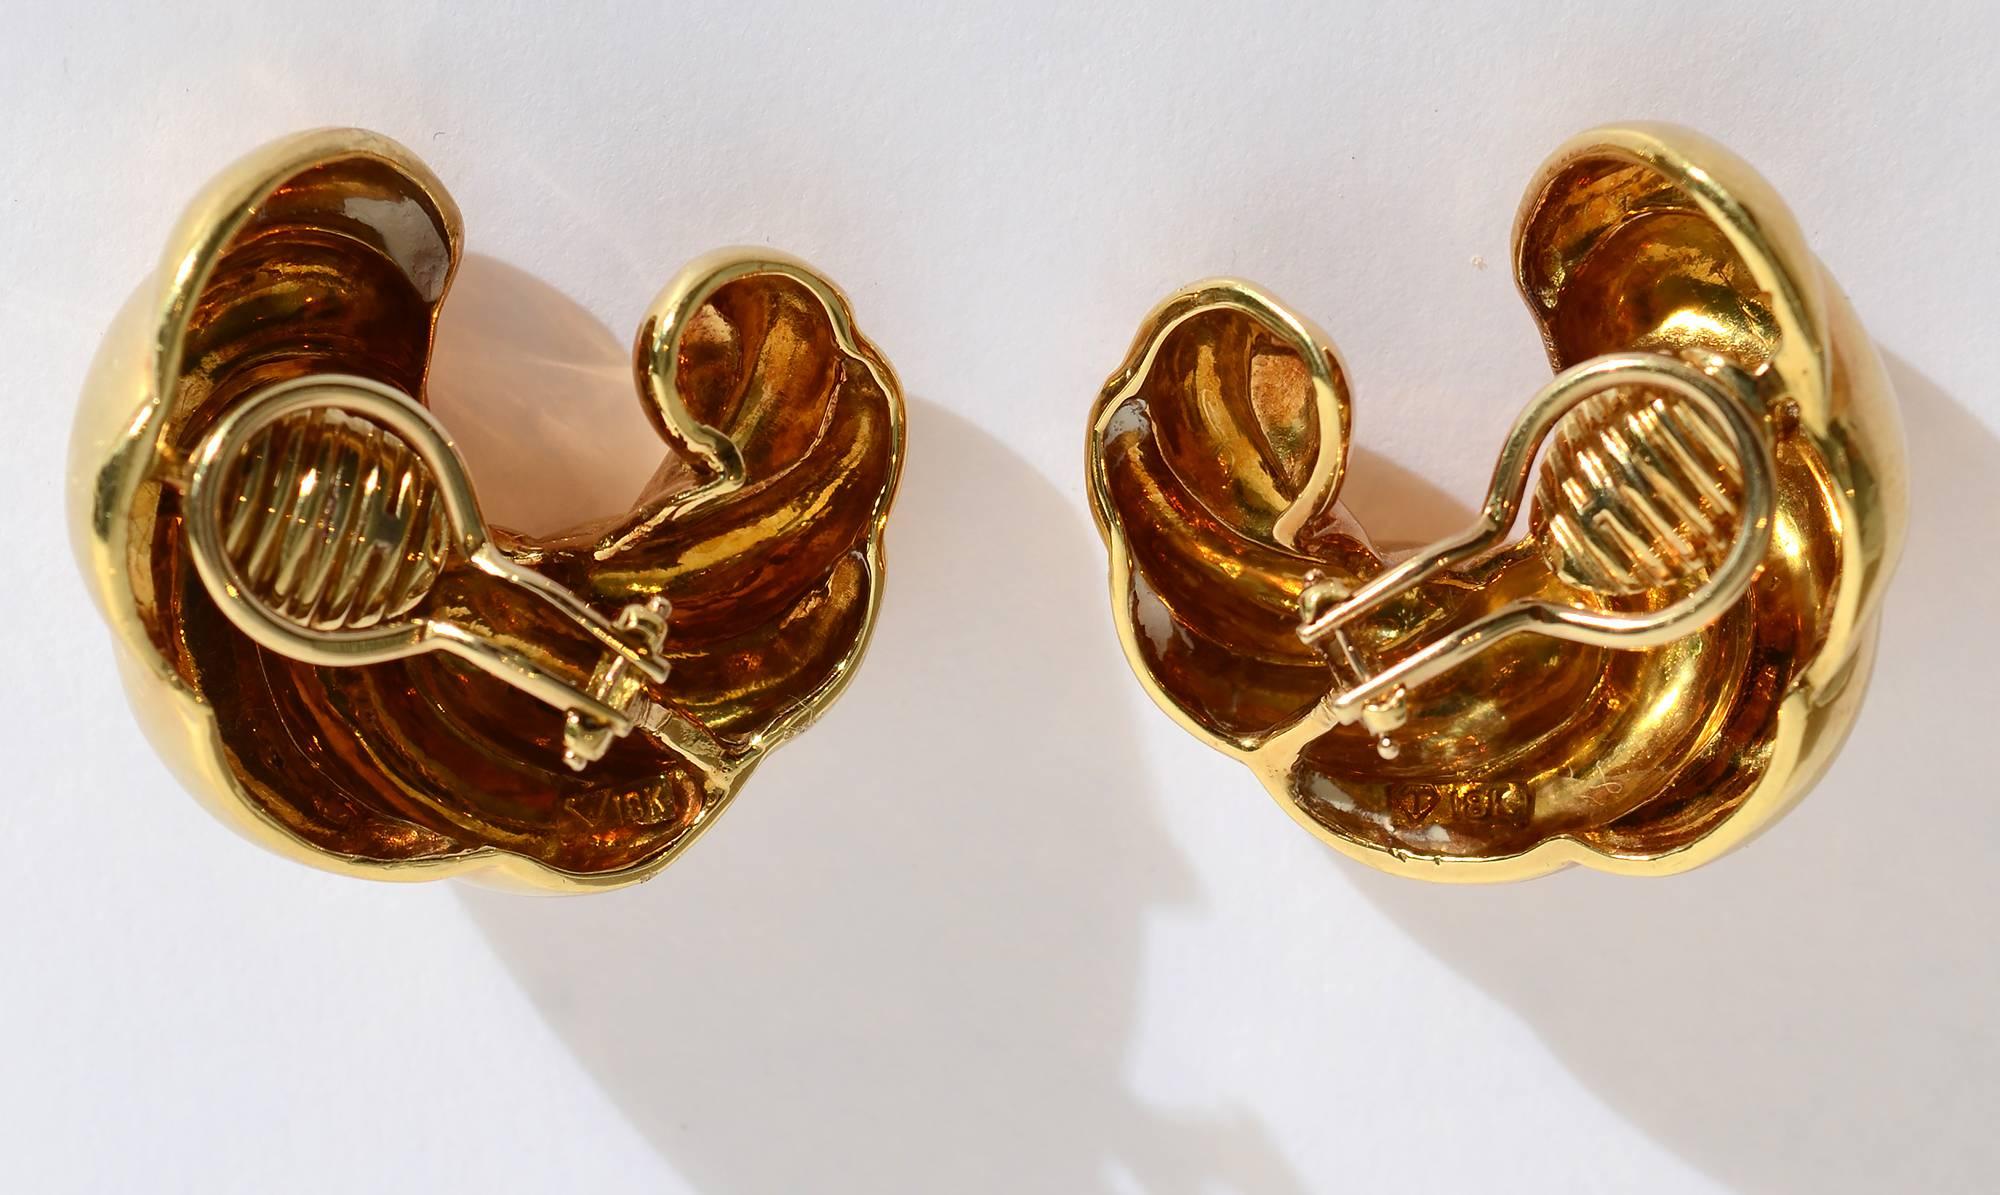 Boucles d'oreilles en or de dix-huit carats, en forme de croissant, avec un motif tourbillonnant. Les dos sont des clips qui peuvent être transformés en poteaux. Les boucles d'oreilles mesurent 1 1/4